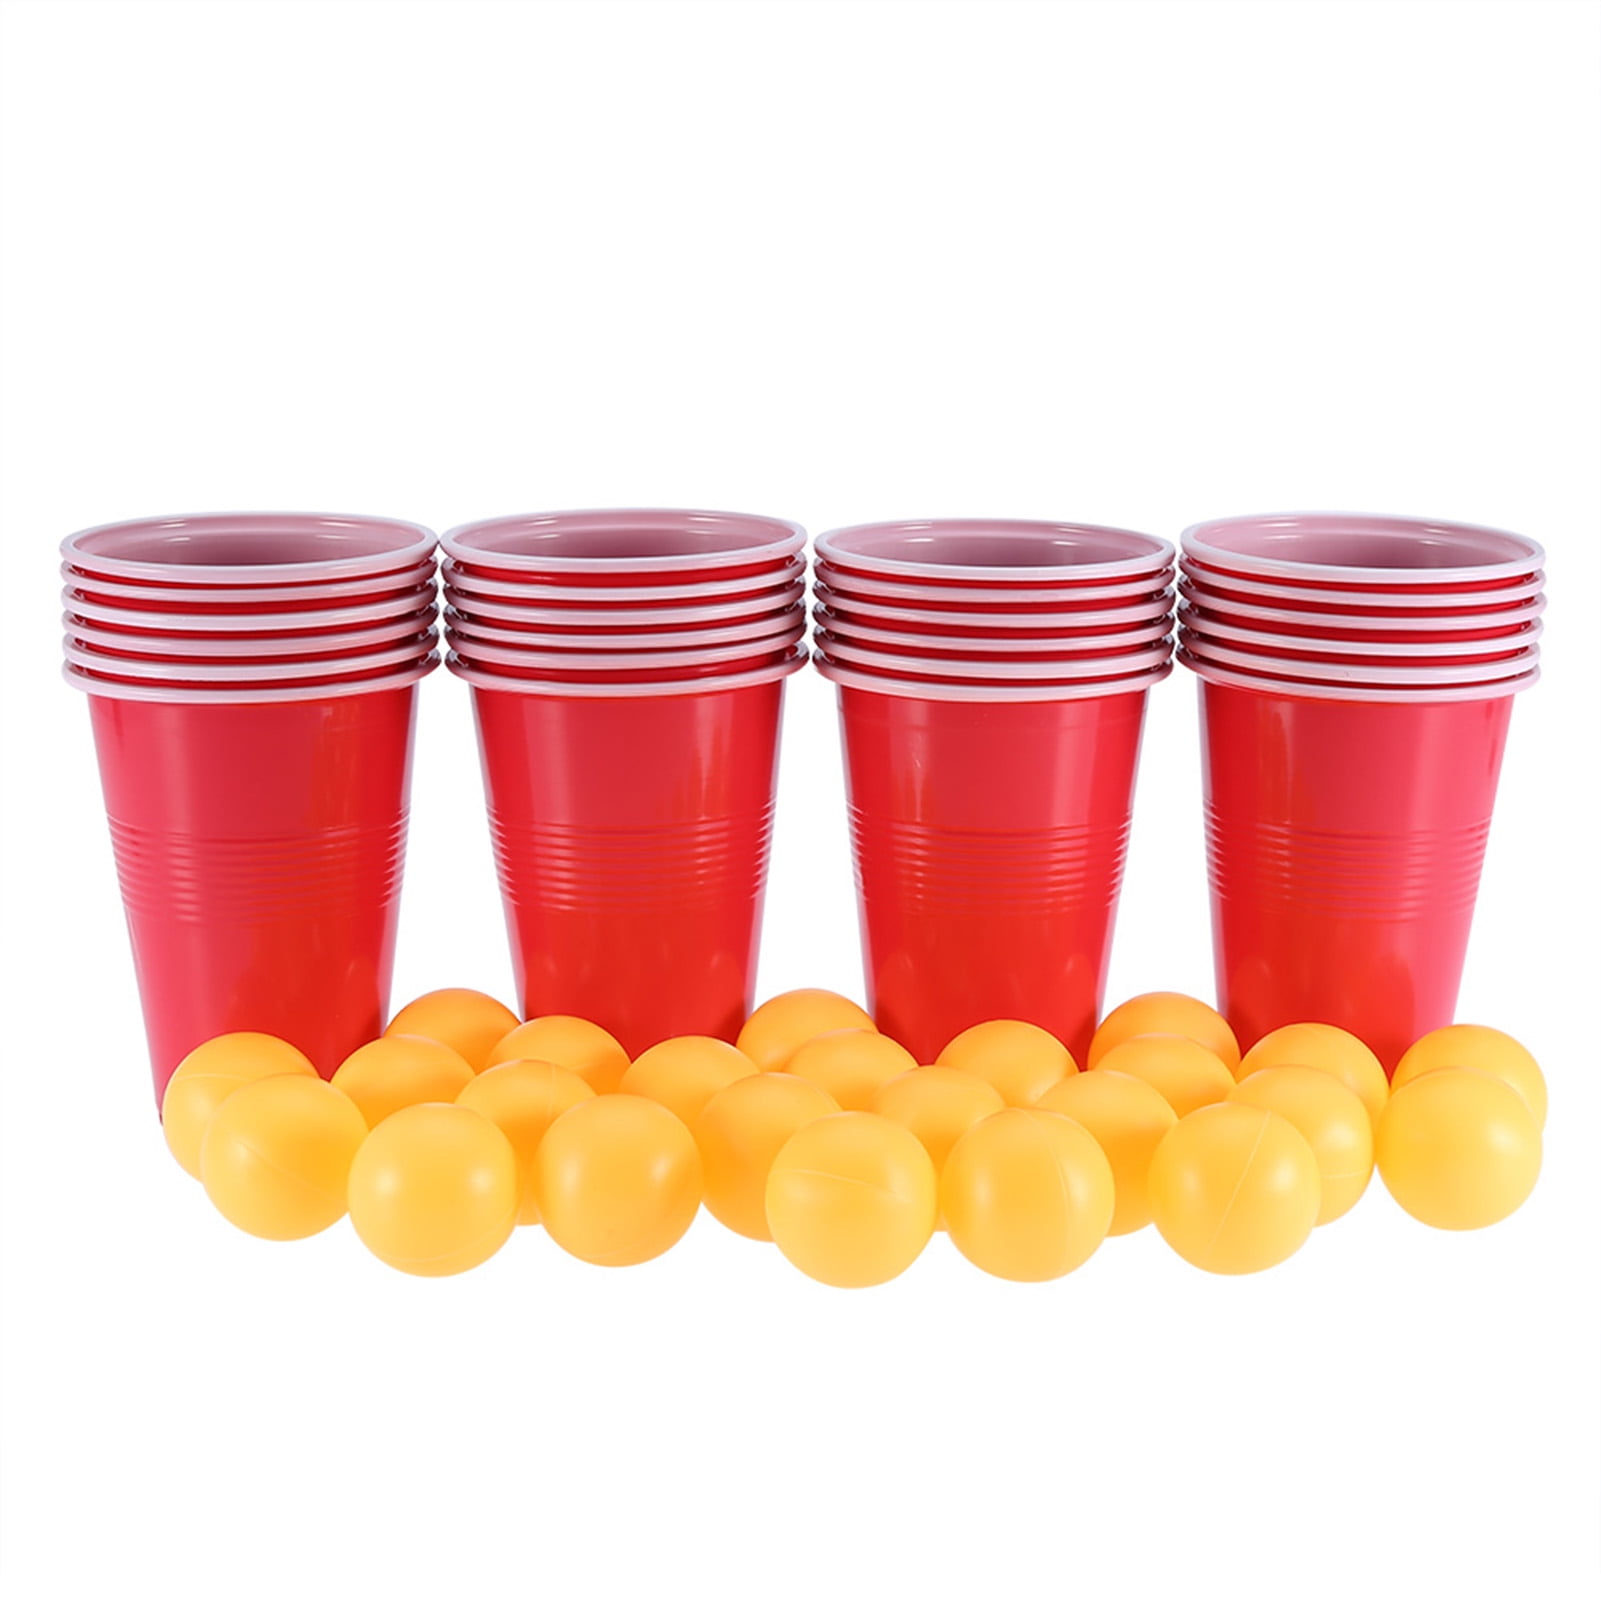 Красные стаканчики для вечеринки. Стаканы красные пластиковые для бир понга. Пинг понг со стаканчиками. Красный пивной стаканчик с шариками.